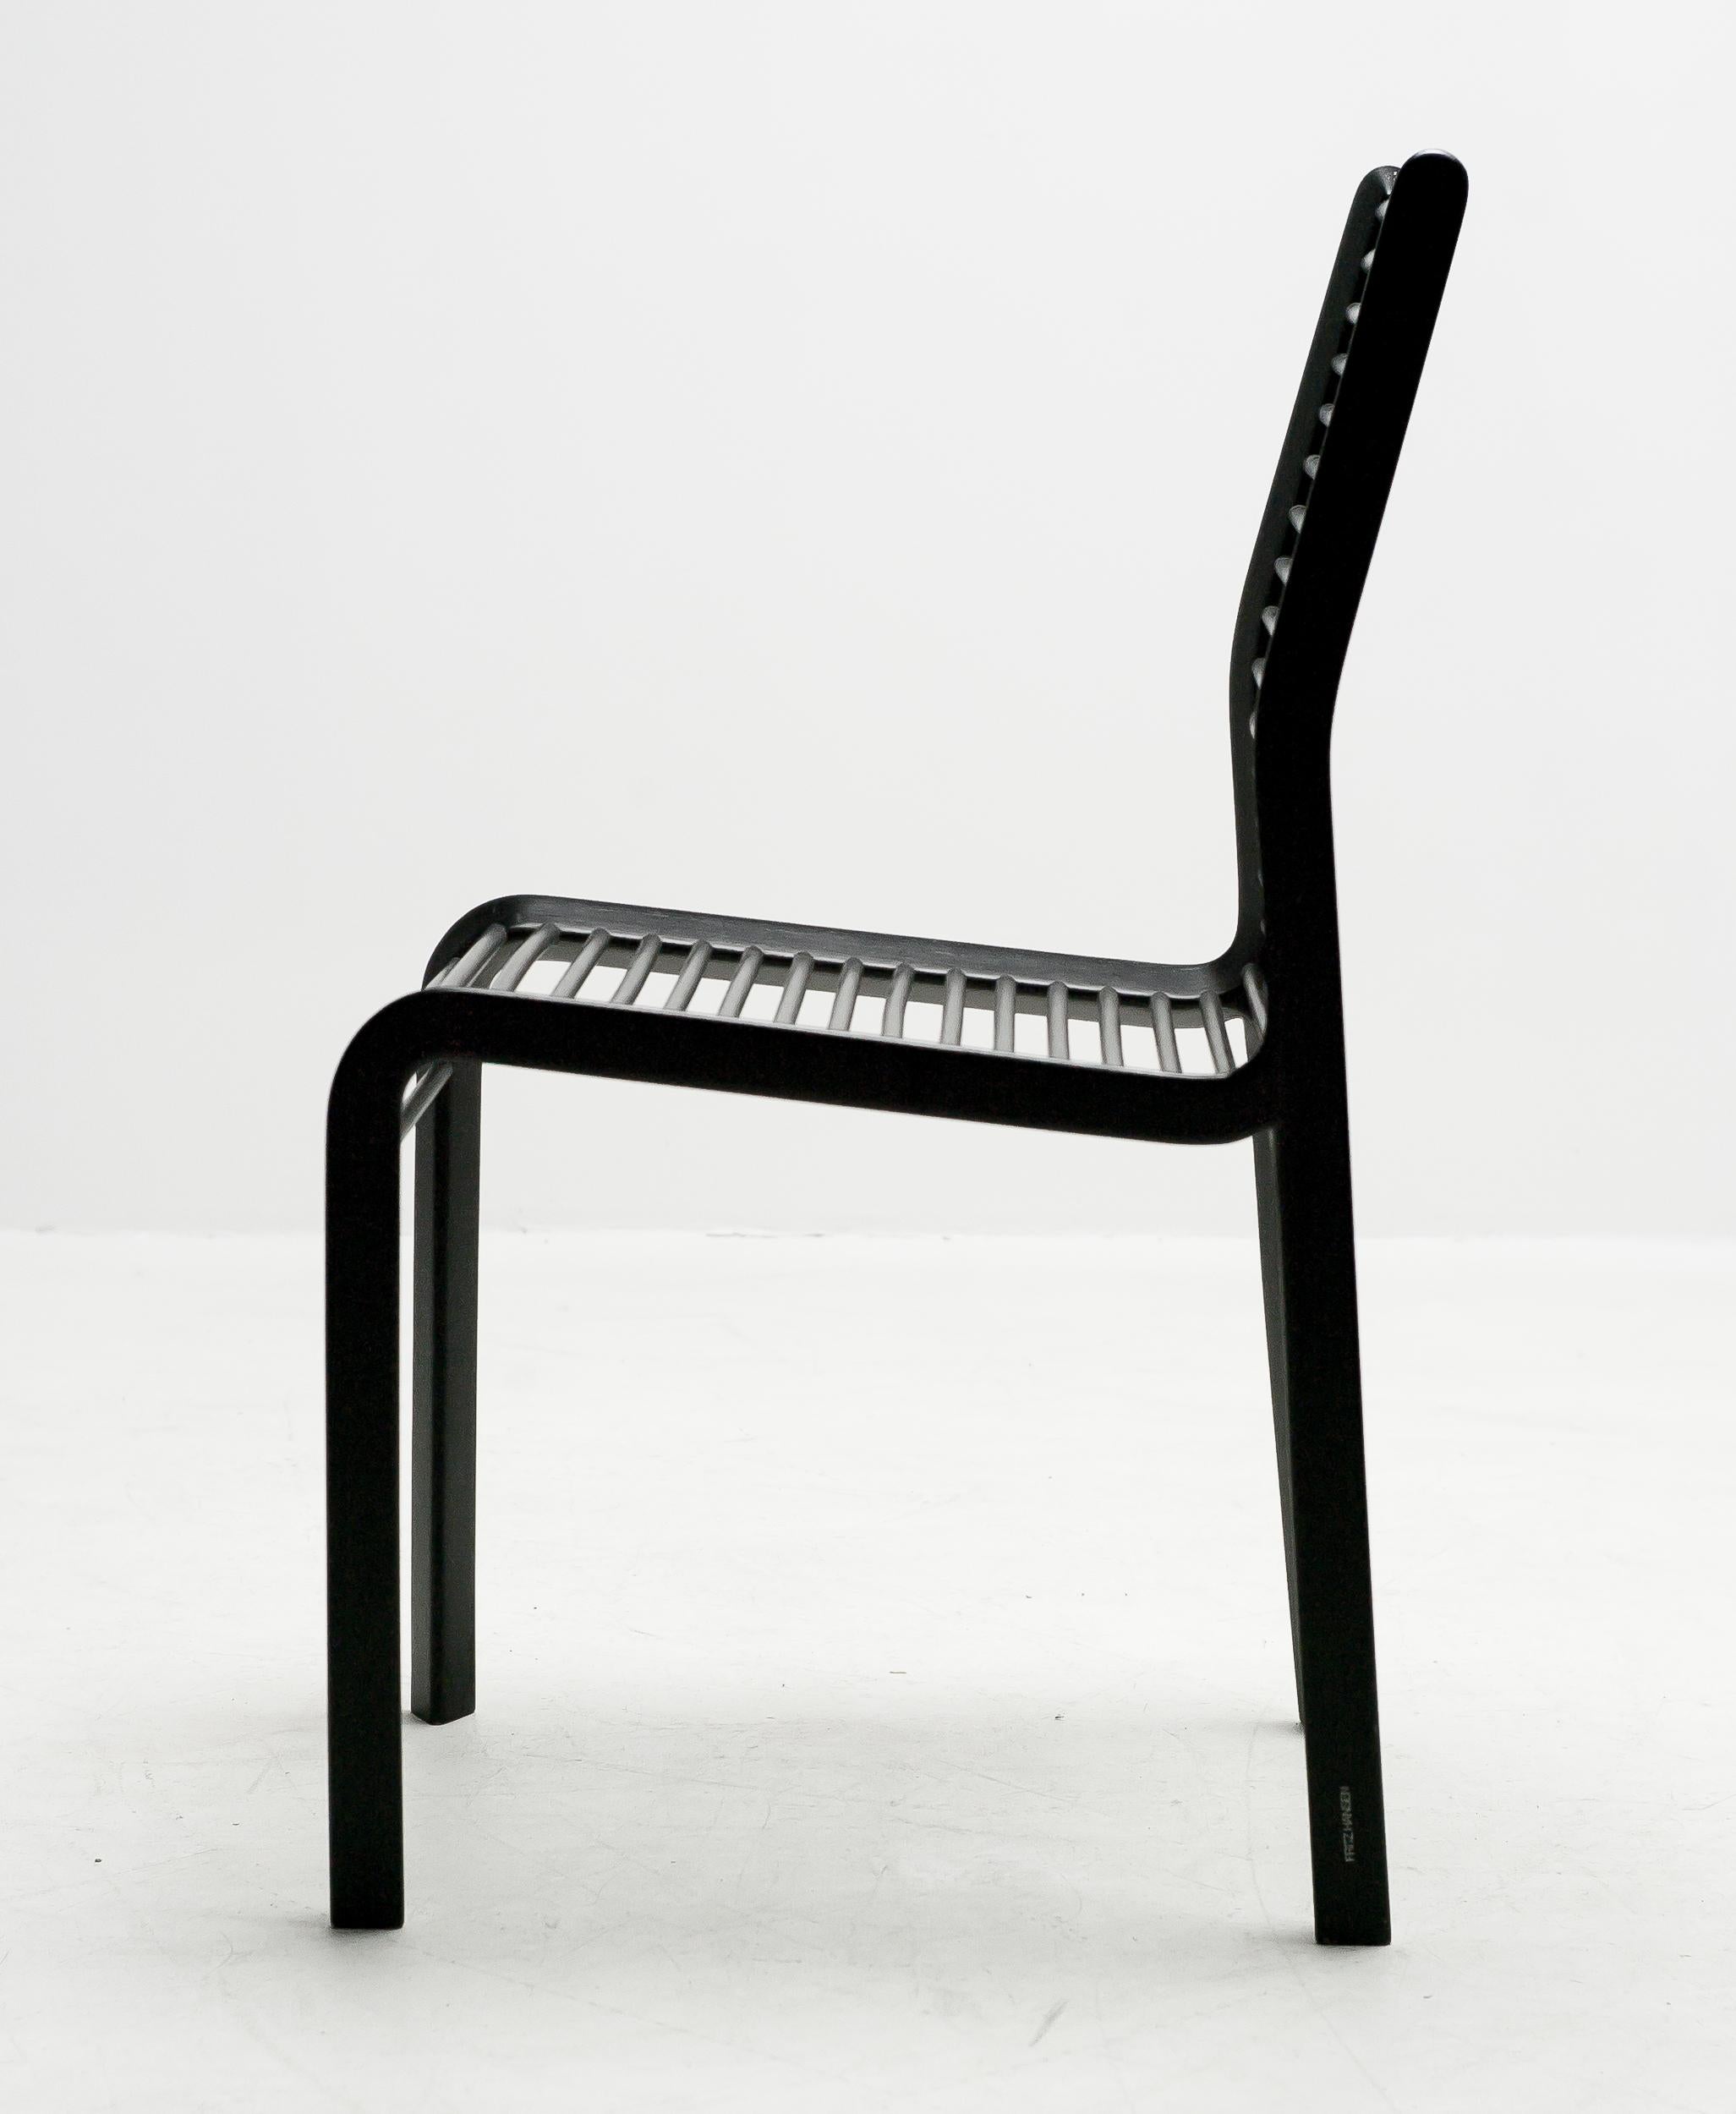 Der außergewöhnliche Delta-Stuhl wurde 1983 entworfen und ist das Ergebnis der ersten Collaboration zwischen Burkhard Vogtherr und Fritz Hansen. Dieser bemerkenswerte, schwarz lackierte Holzstuhl wurde in einer limitierten Auflage von nur 100